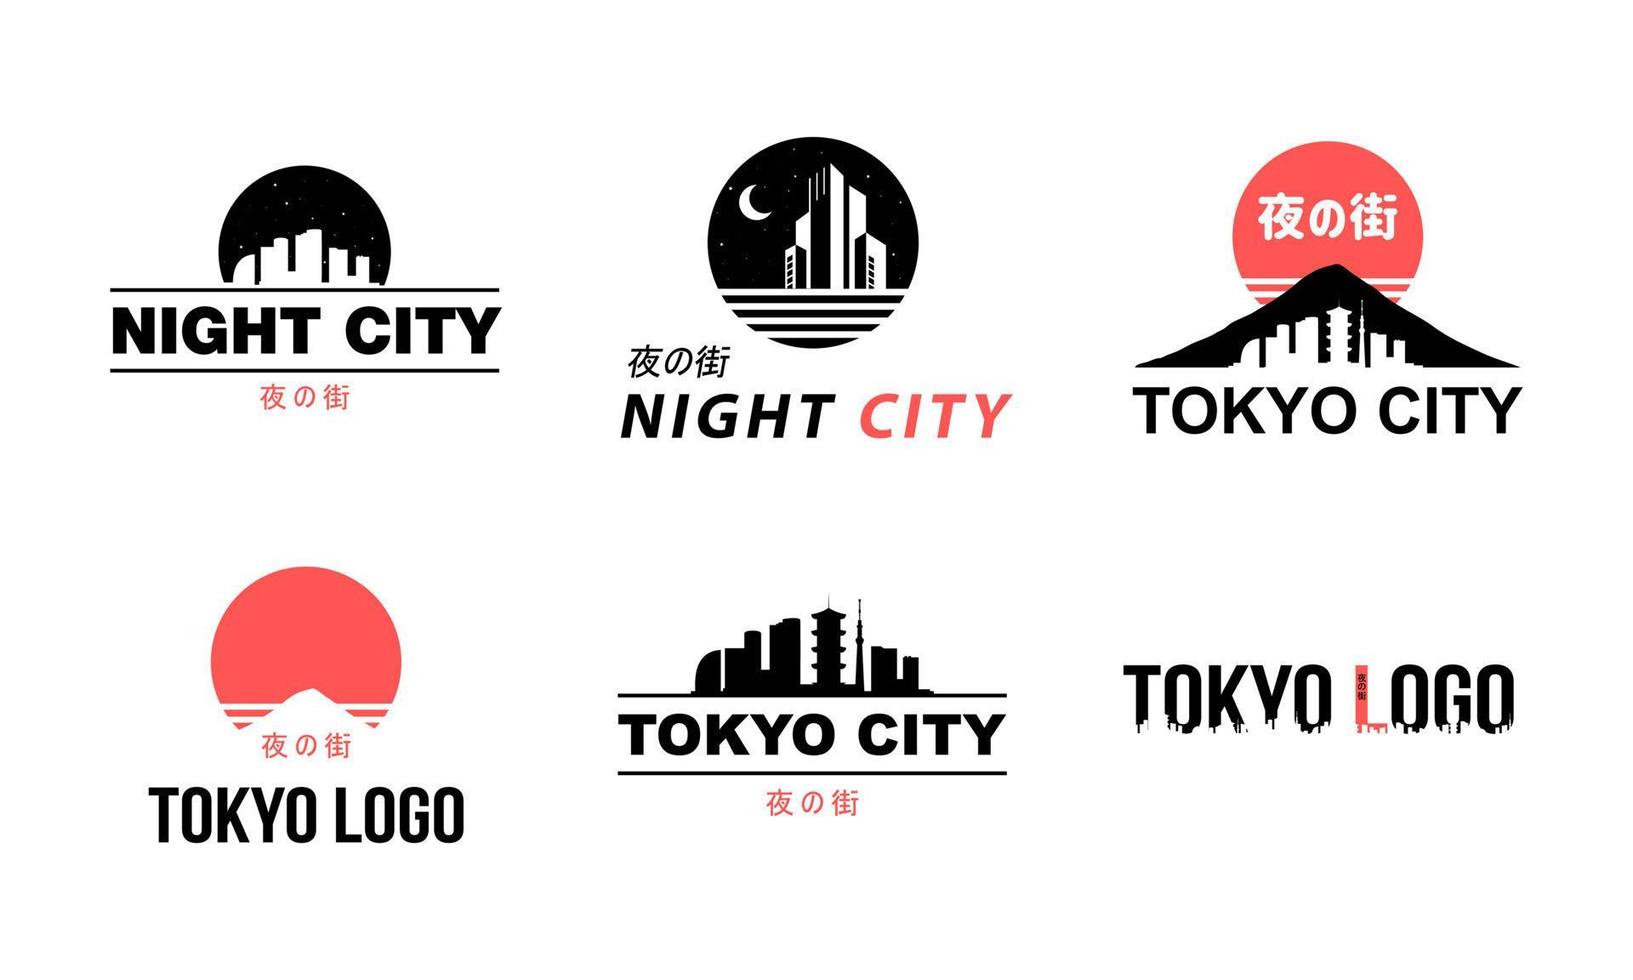 colección de logos en estilo oriental. ciudad de tokio en alfabeto japonés. conjunto japonés de gráficos vectoriales. diseño de la ciudad nocturna de tokio. etiquetas cyberpunk de japón. vector